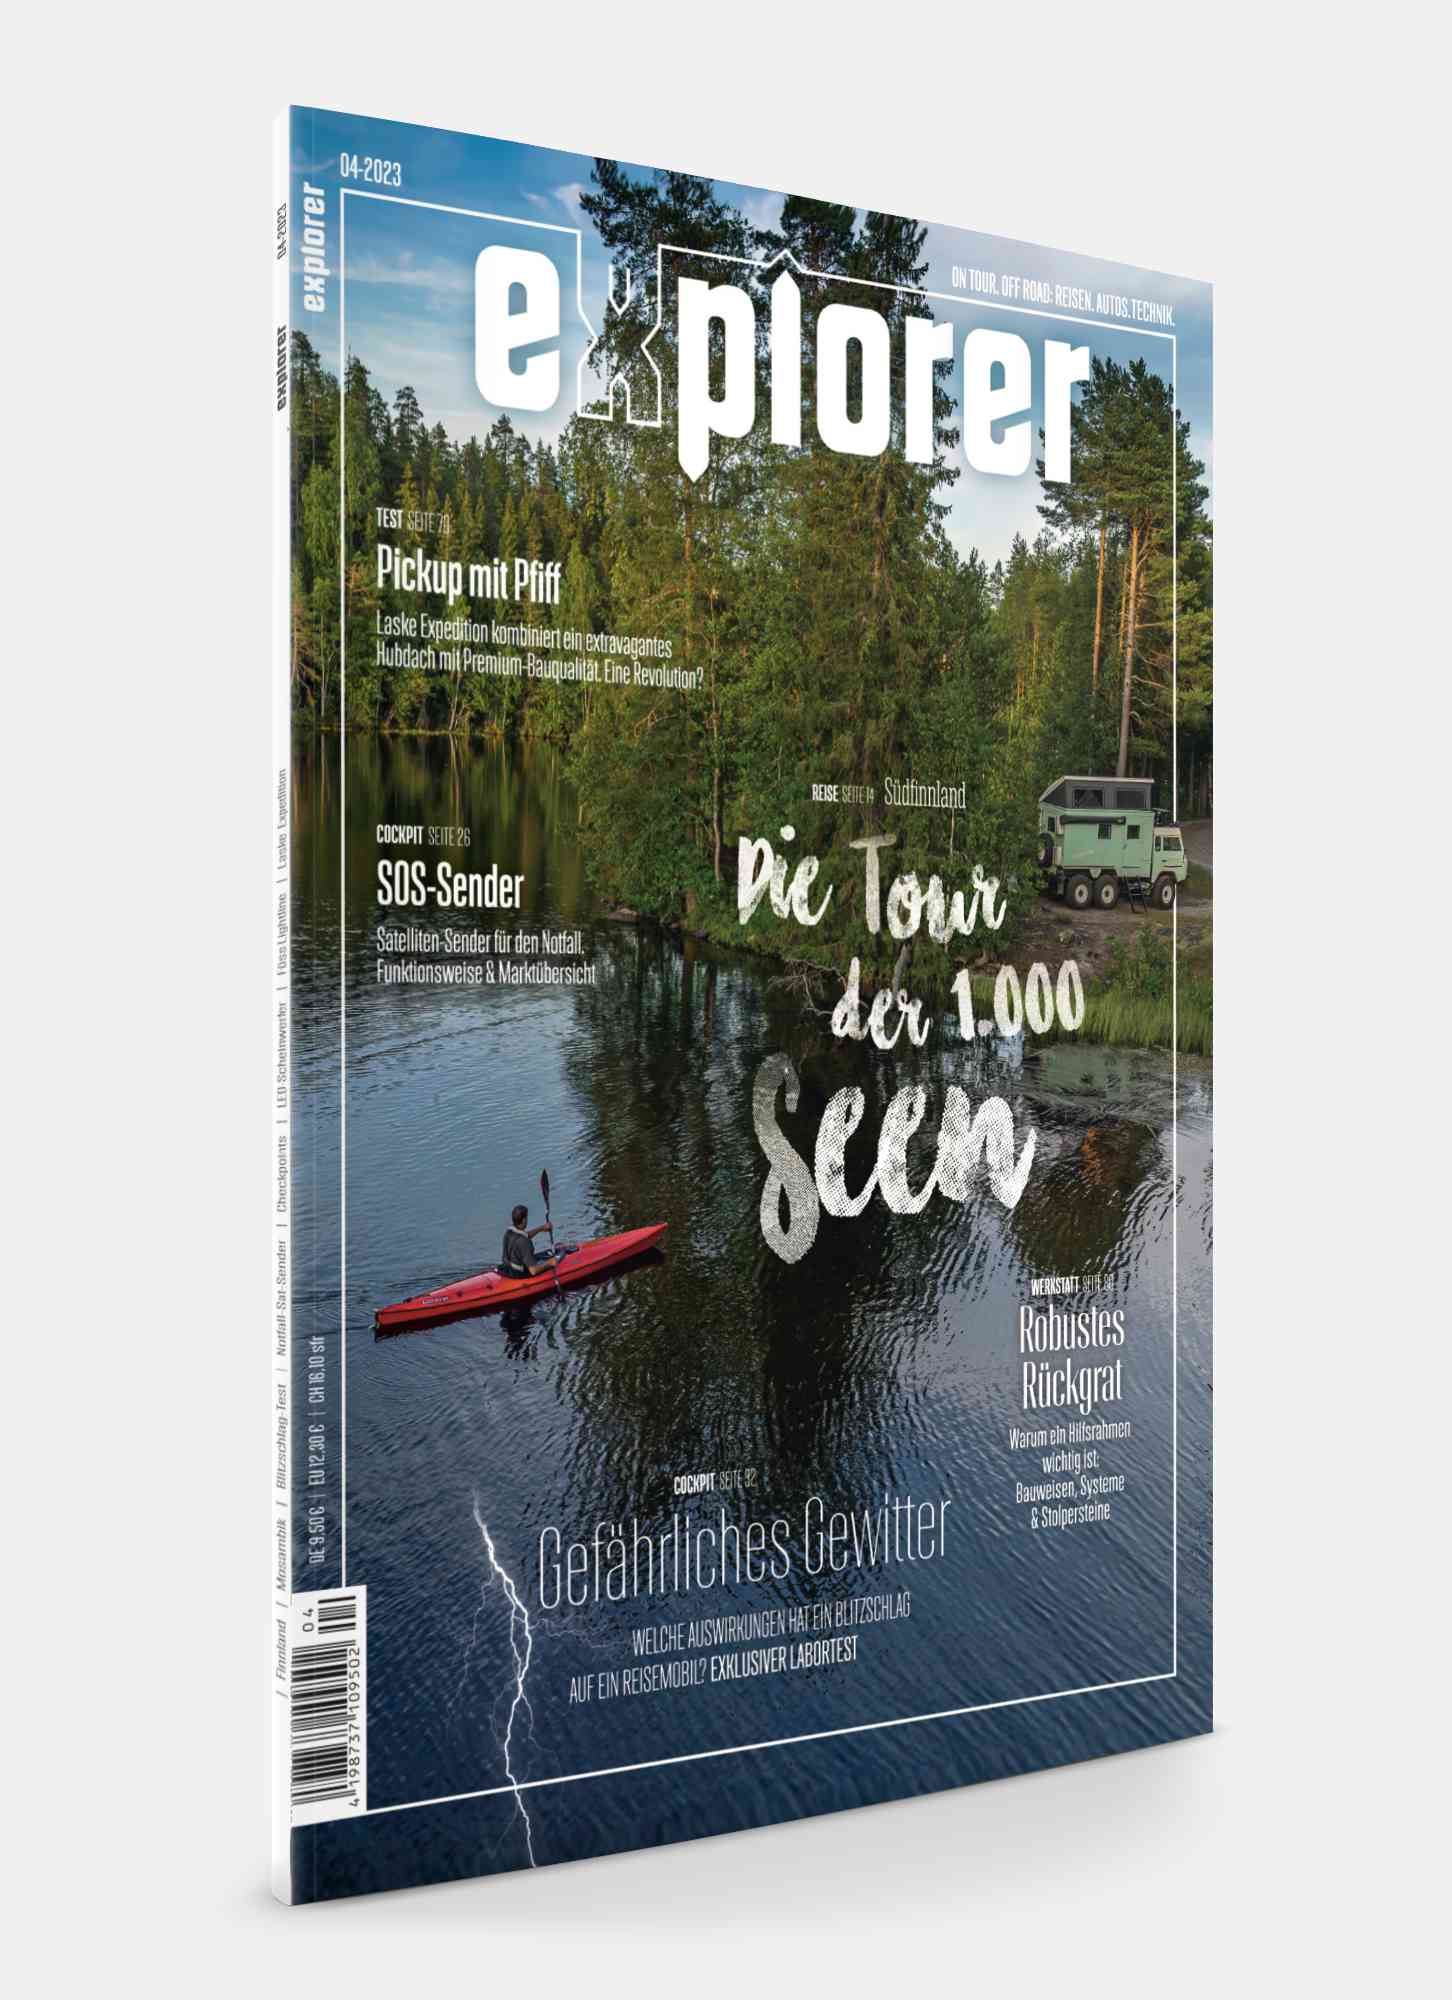 Offroad-Ausrüster Horntools ist verkauft - explorer Magazin